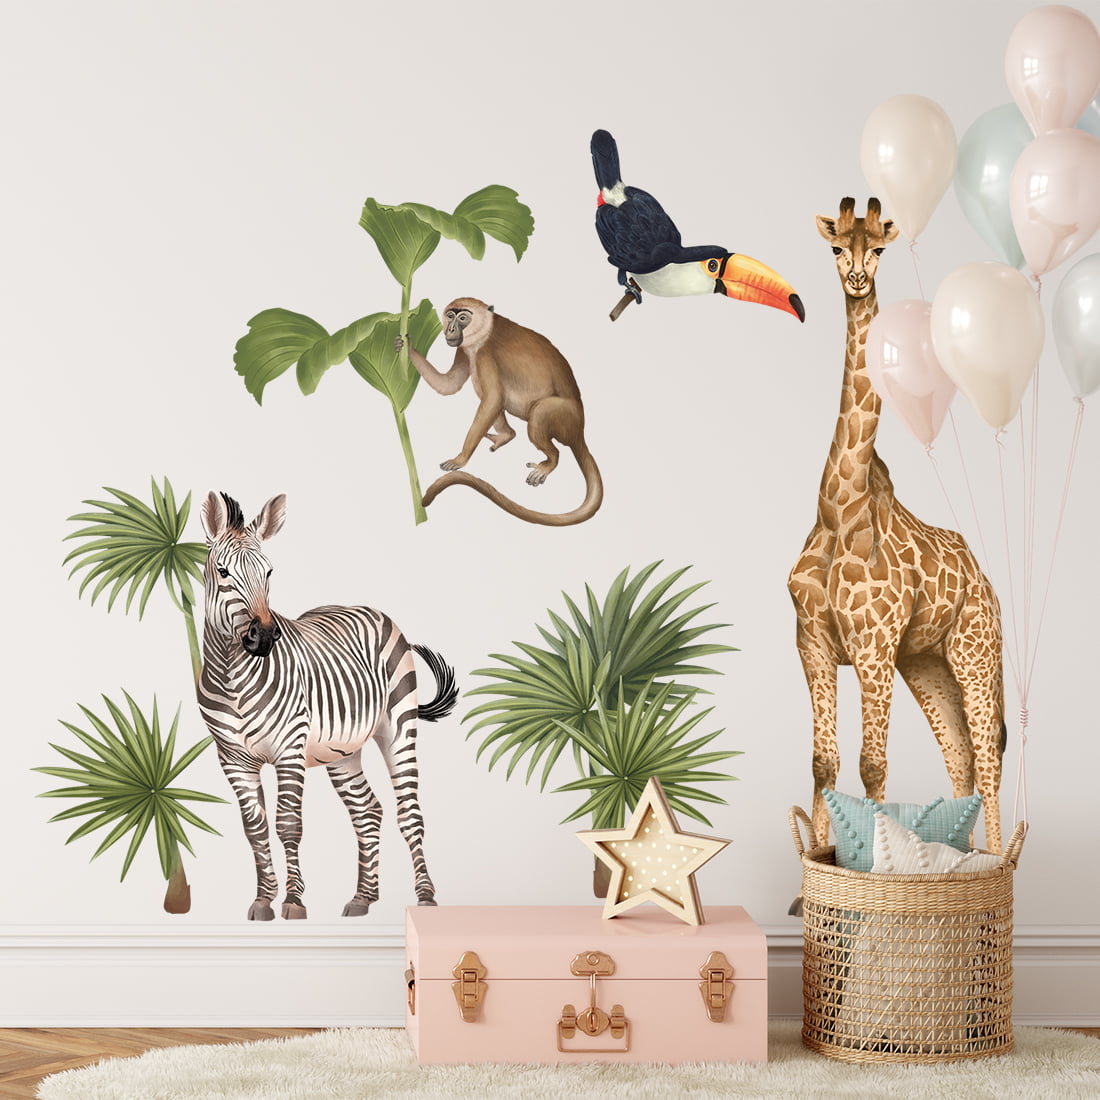 Kinderzimmer mit Wandaufkleber Safari mit einem Zebra, Giraffe, Tucan, einen Affen und sämtlichen Pflanzen